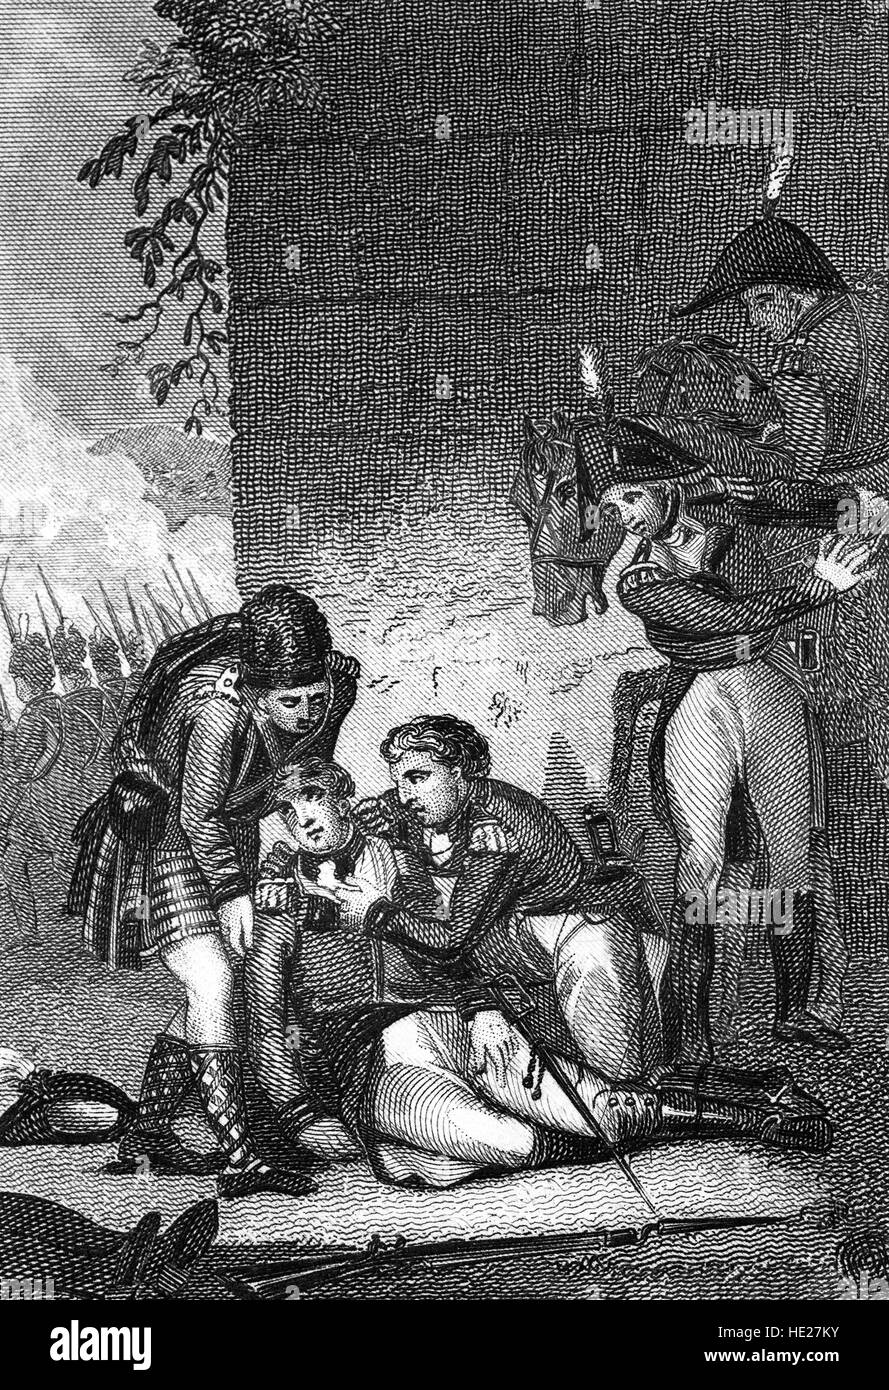 La bataille de la Corogne a eu lieu au cours de la guerre d'Espagne, une partie de l'ensemble des guerres napoléoniennes. Il a eu lieu le 16 janvier 1809, lorsqu'un corps français sous le maréchal de l'Empire Nicolas Jean de Dieu Soult a attaqué une armée britannique sous le Lieutenant-général Sir John Moore. John Moore (1761 - 1809) a été frappé par un tir de canon et mortellement blessé. Banque D'Images